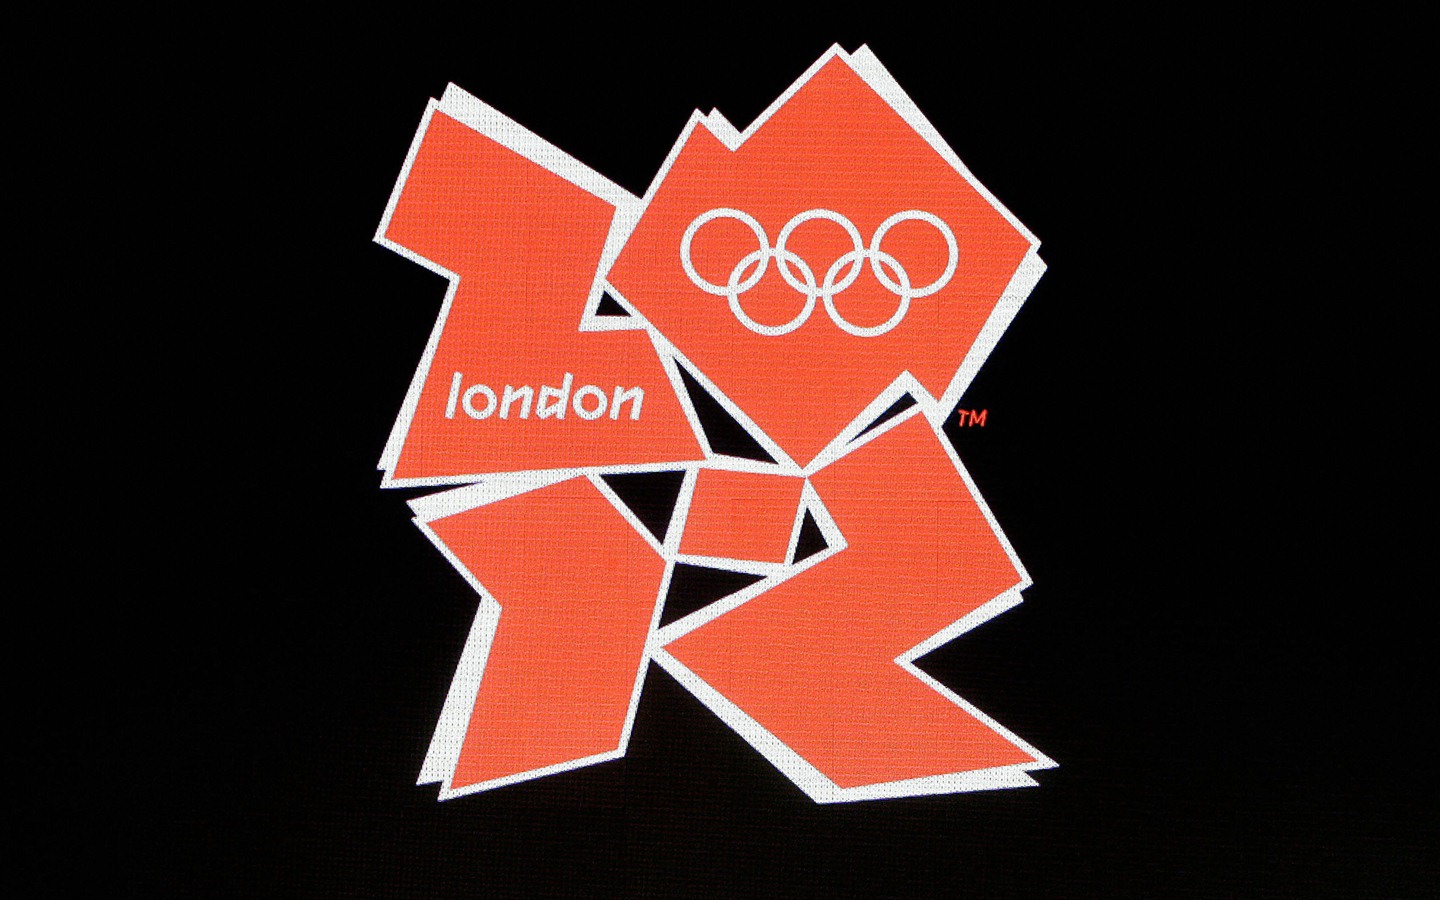 Londres 2012 Olimpiadas fondos temáticos (2) #30 - 1440x900